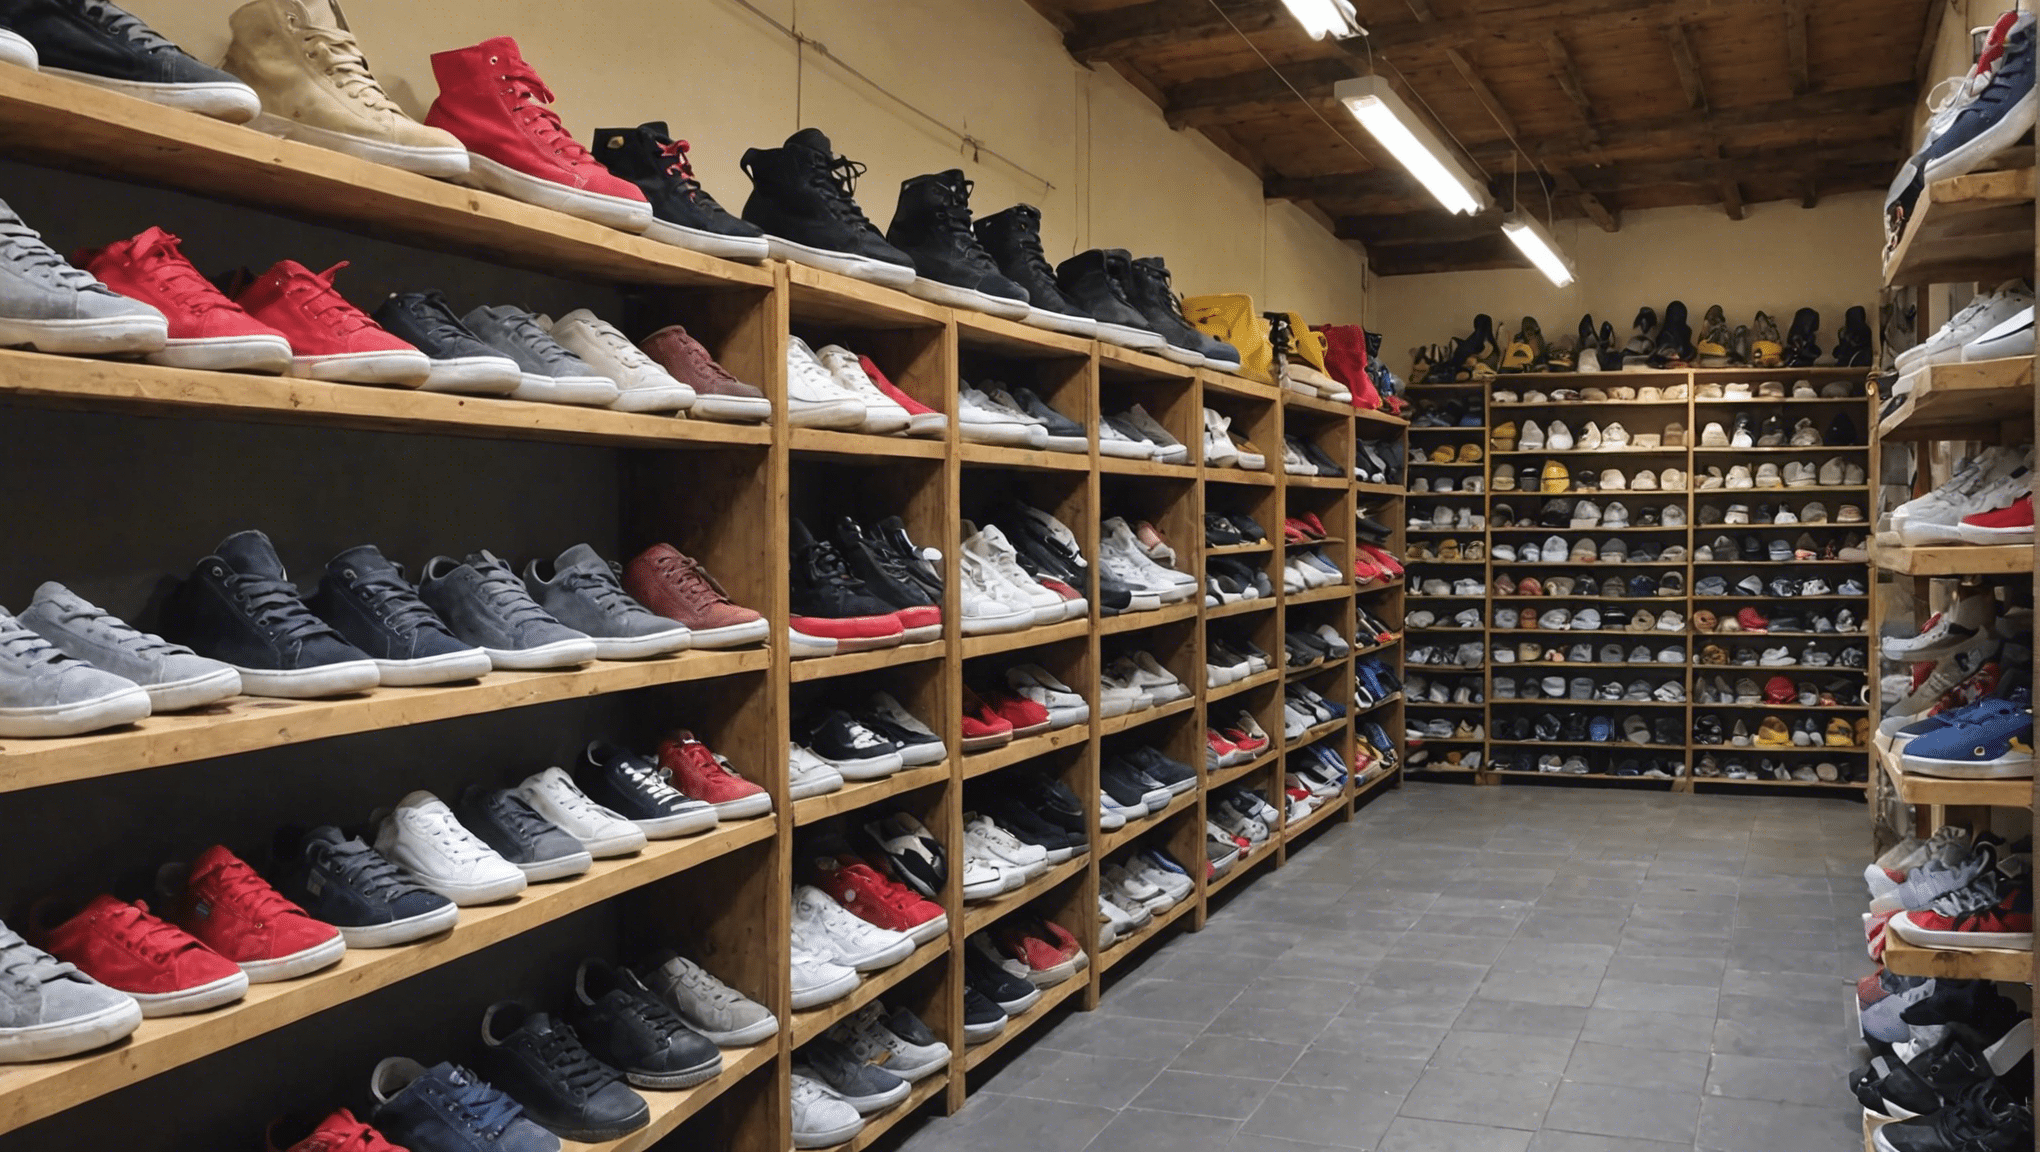 trouvez les baskets de vos rêves dans cette incroyable boutique de périgueux. découvrez une sélection unique de chaussures pour tous les styles et toutes les occasions.